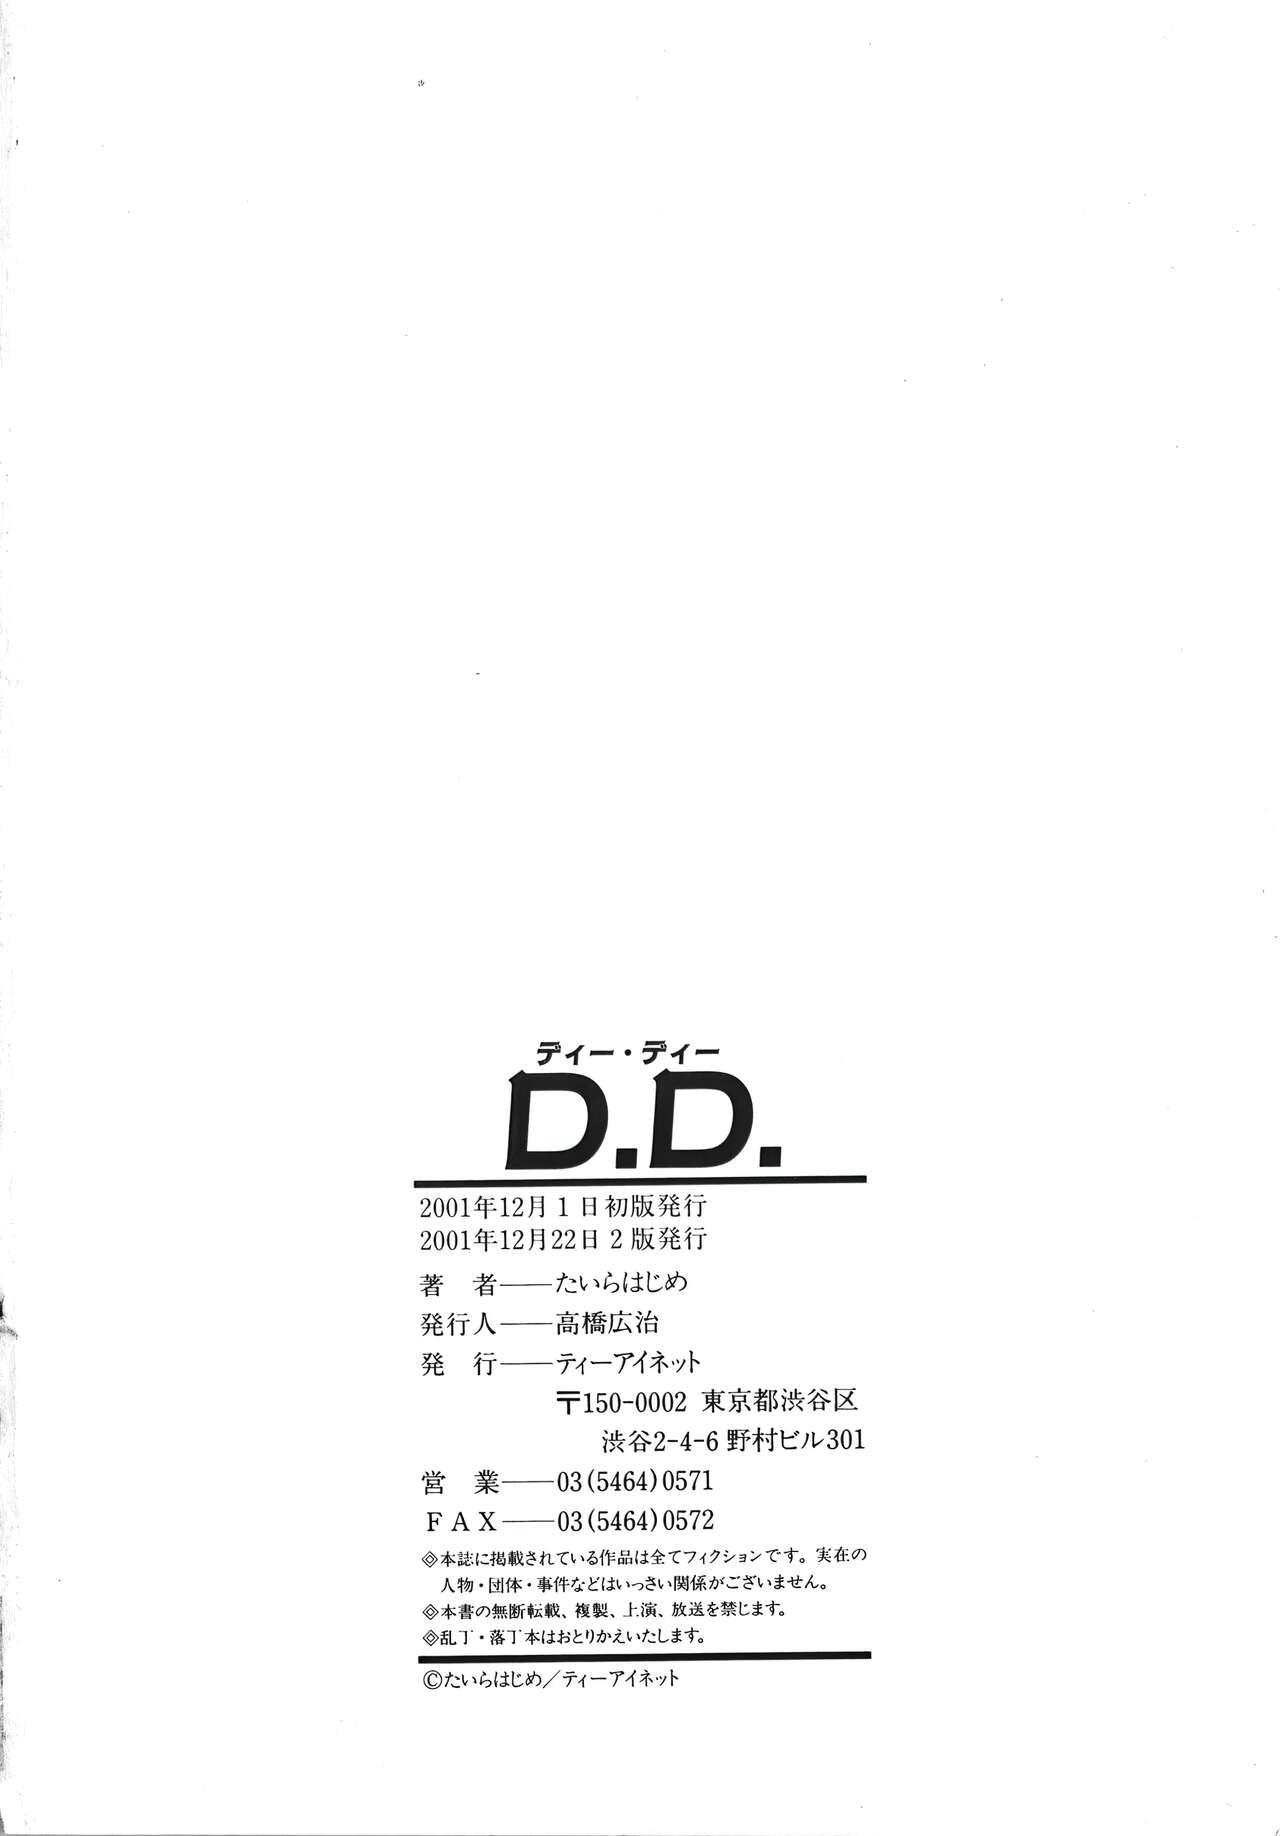 D.D. 199